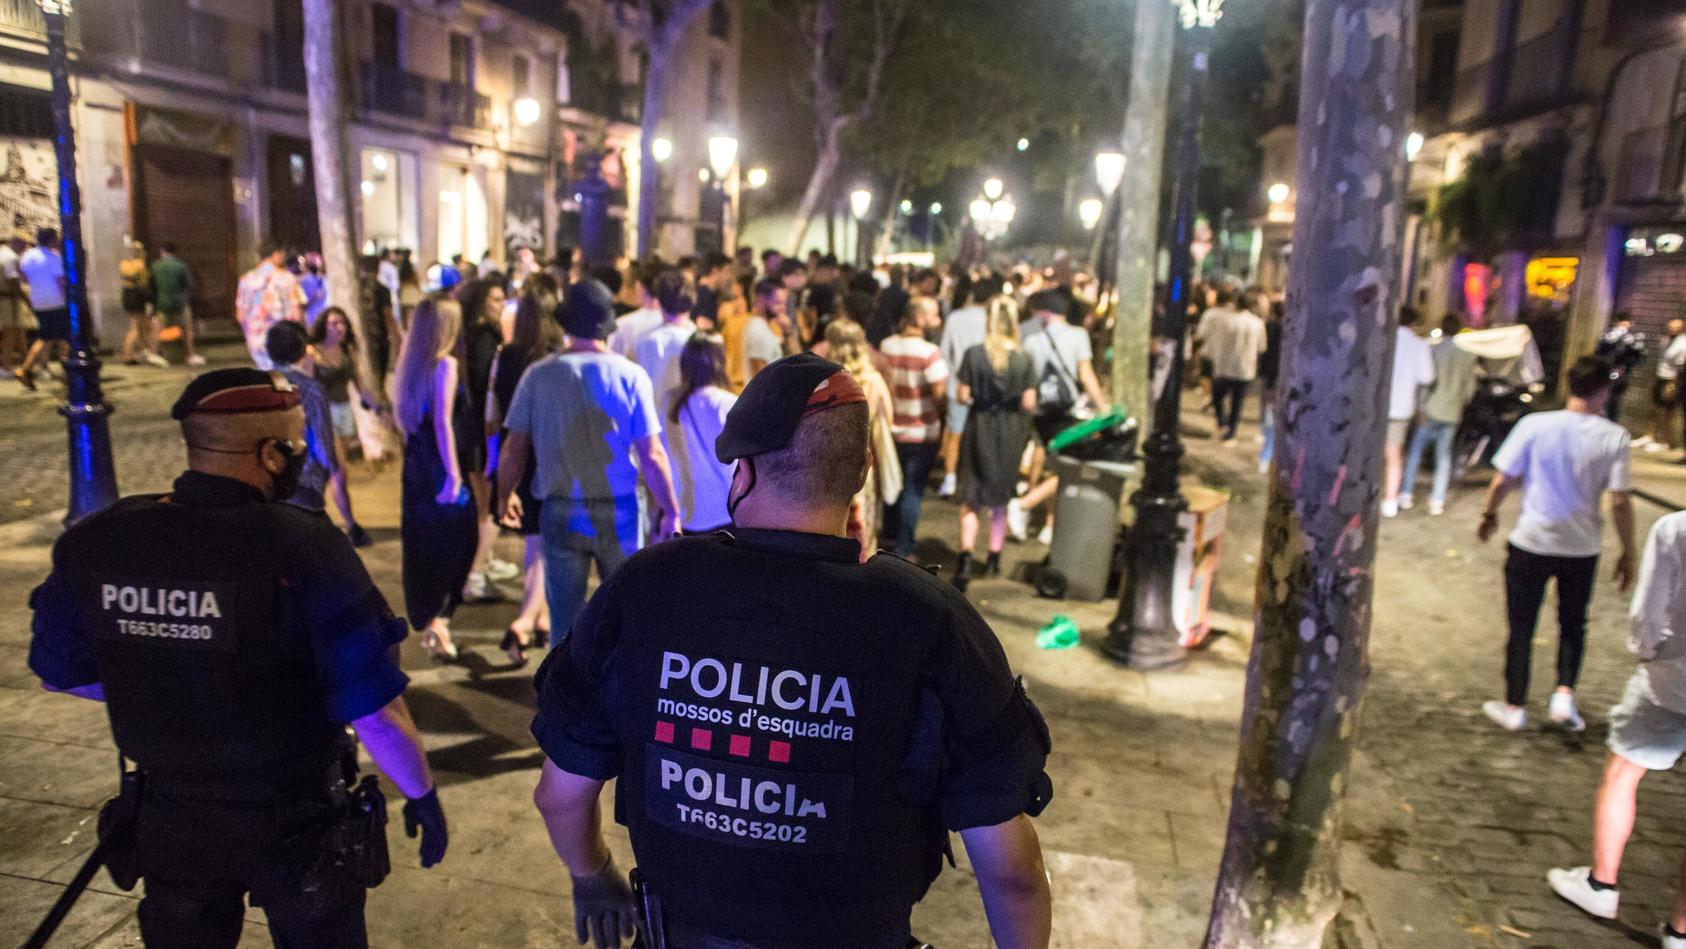 11.07.2021, Spanien, Barcelona: Polizisten vertreiben junge Menschen, die sich nachts auf der Straße versammelt hatten. Zur Eindämmung der schon seit Tagen rasant steigenden Infektionszahlen schränkt der spanische Corona-Hotspot Katalonien nächtliche